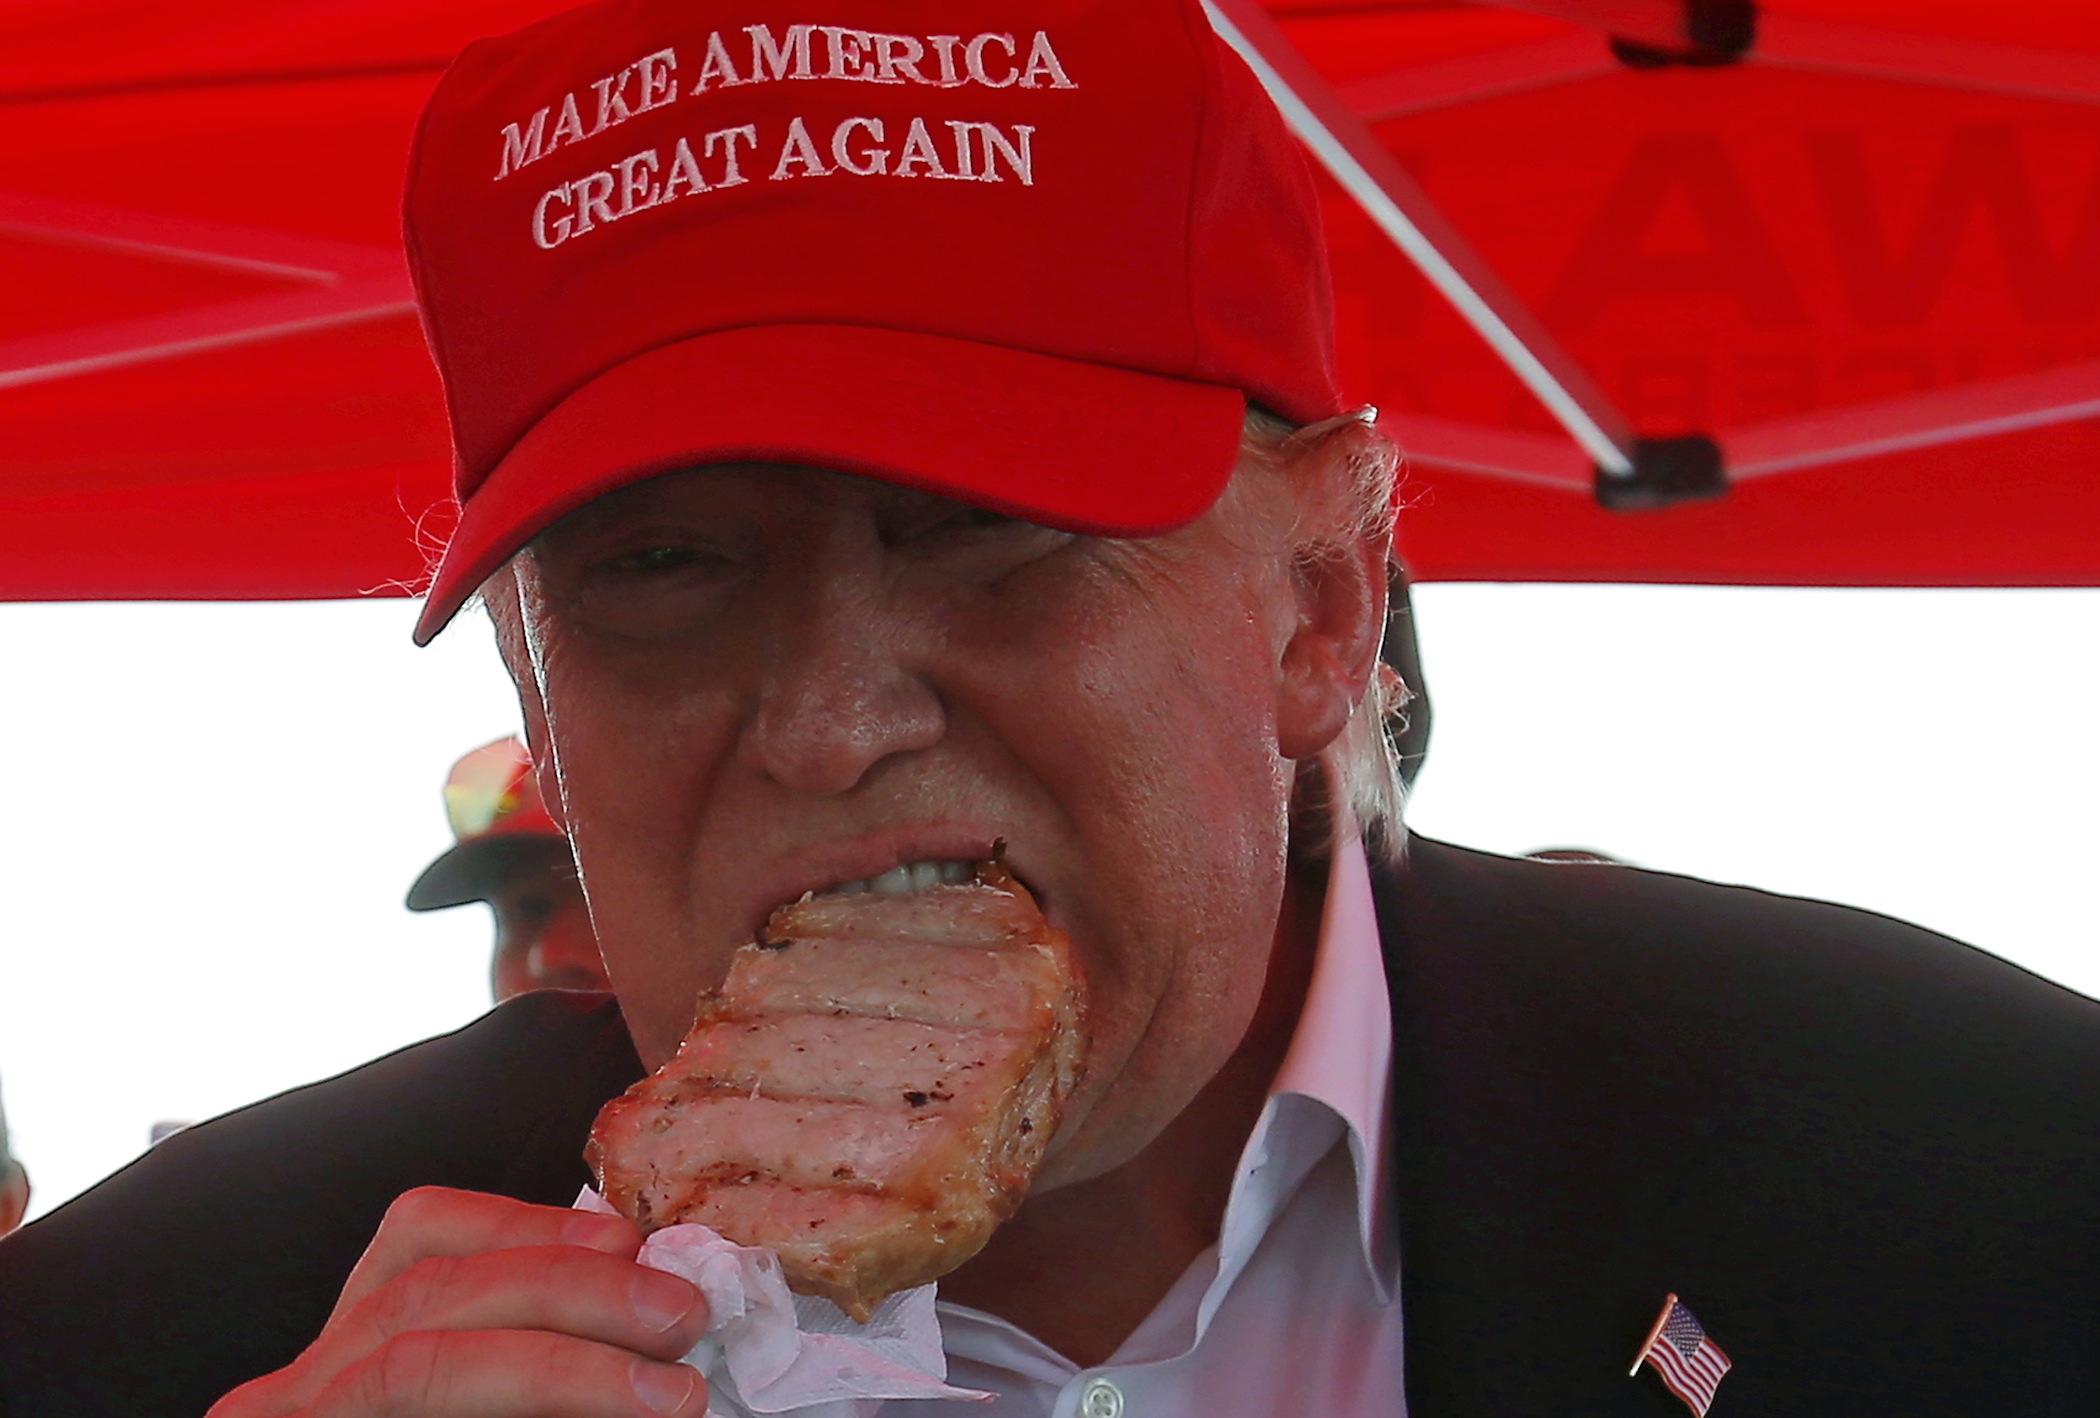 Donald Trump eating